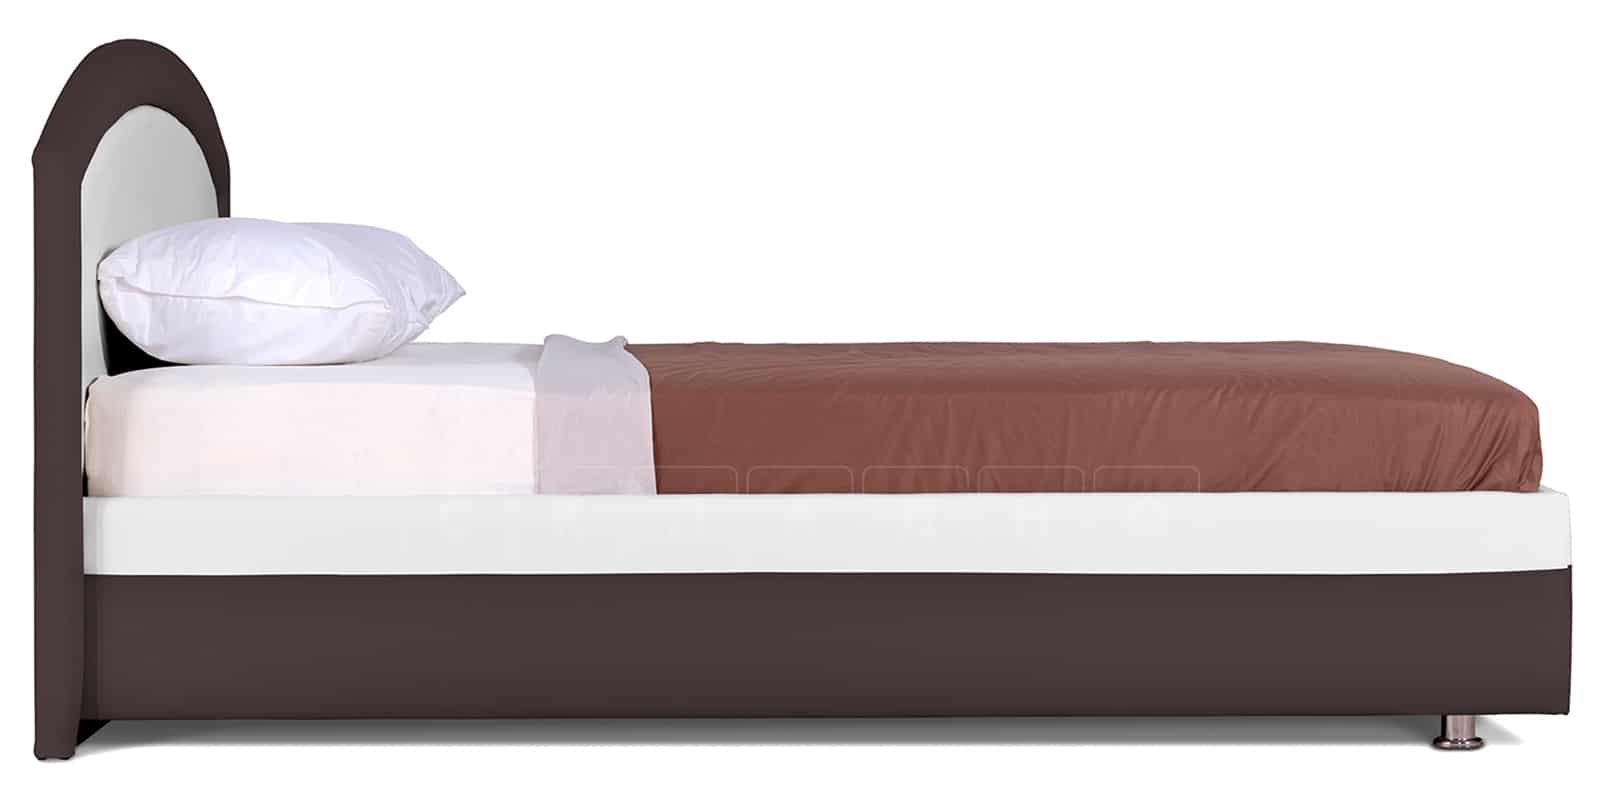 Мягкая кровать Малибу 160 см экокожа белый-шоколад вариант 8 фото 4 | интернет-магазин Складно